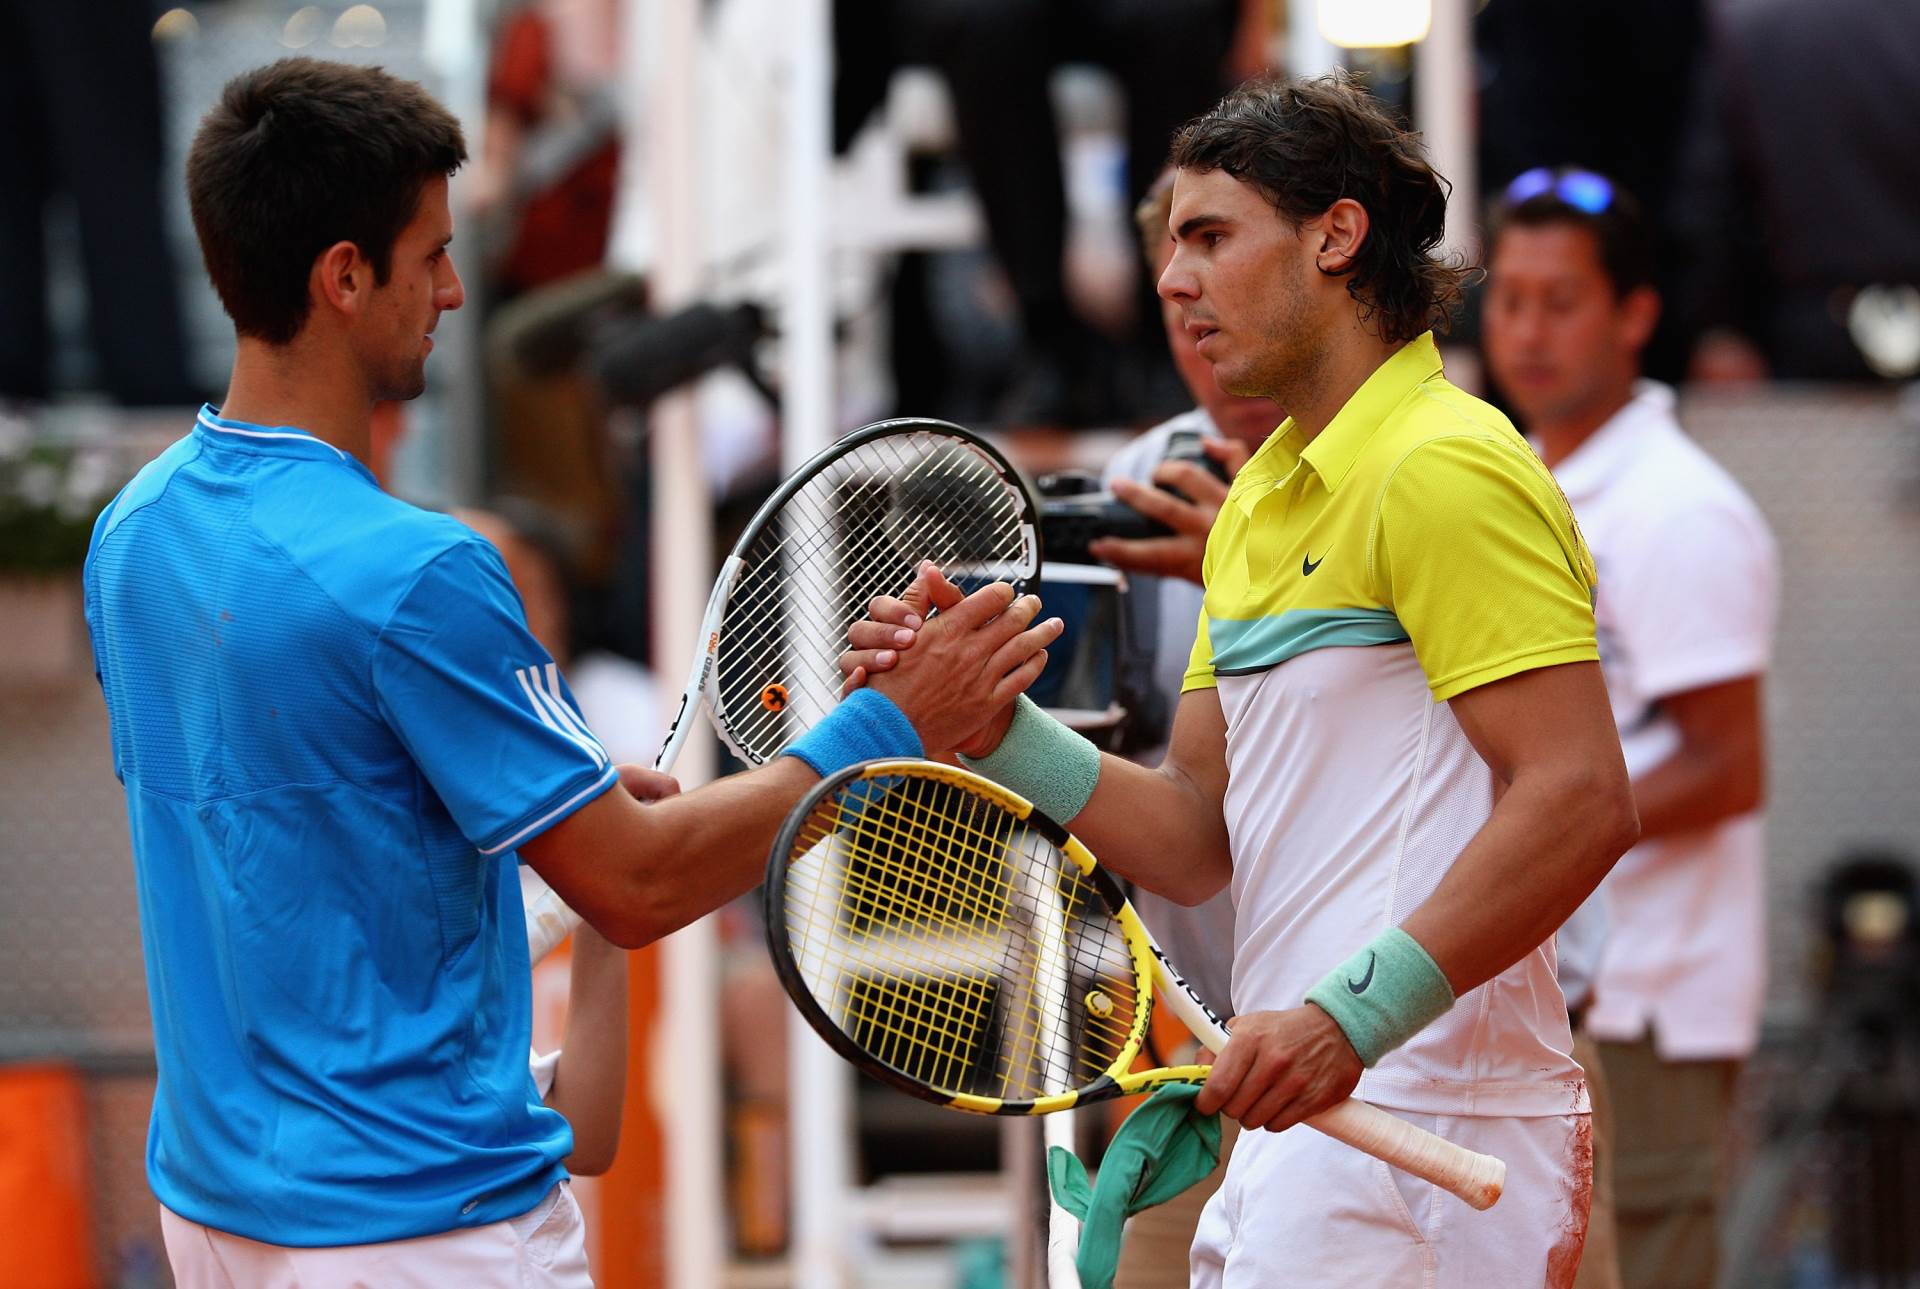  Hoće li Novak zaigrati na stadionu "Rafael Nadal"? Madrid spremio veliku čast svom heroju, ali uz je 